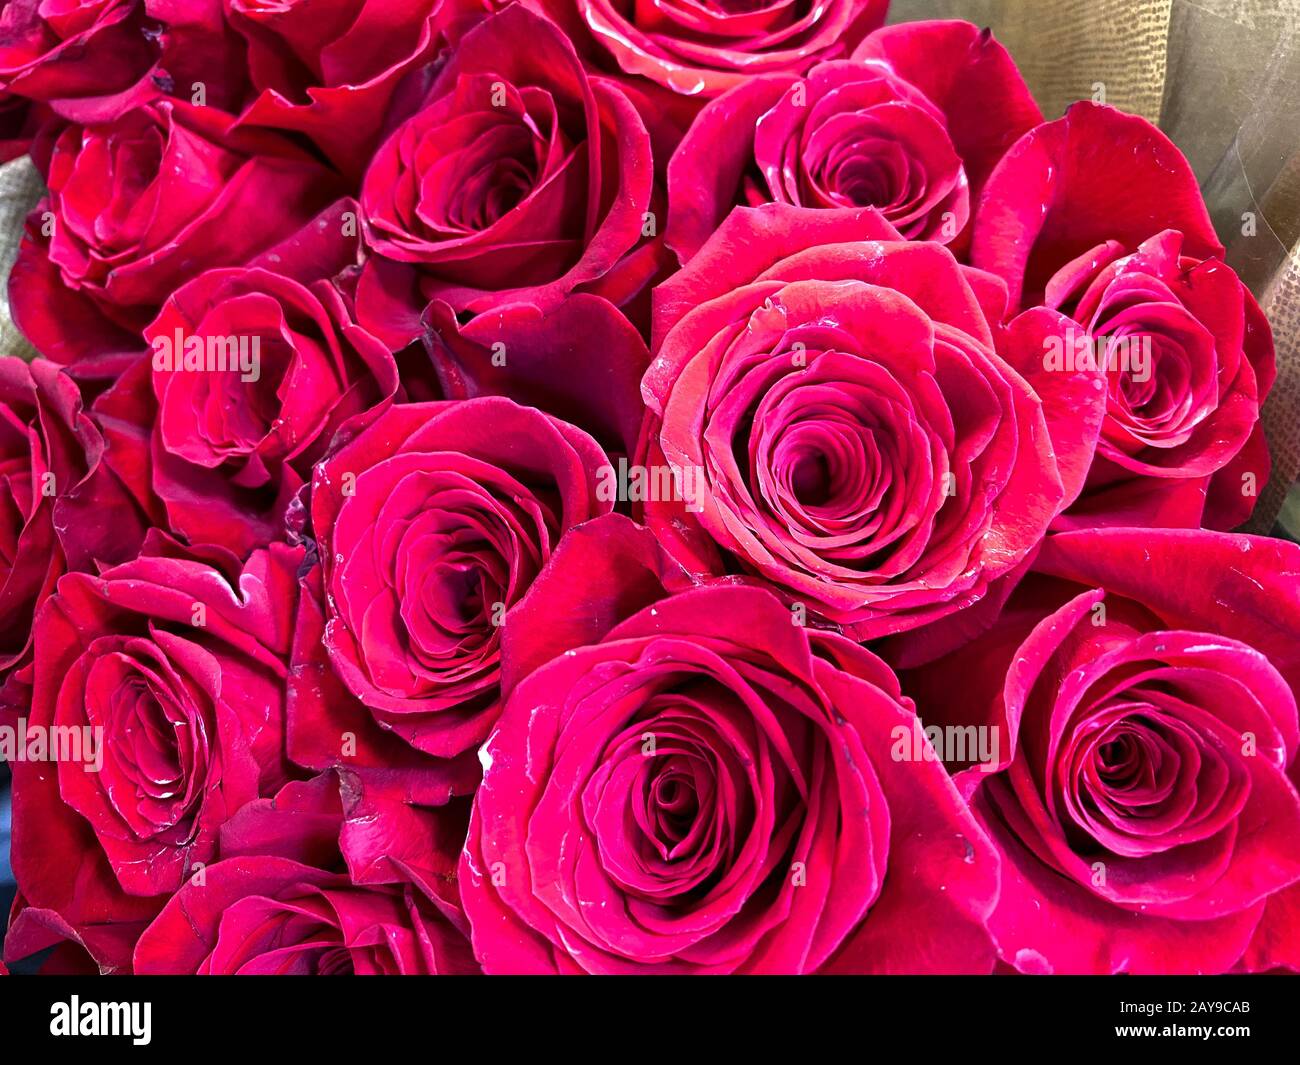 Plusieurs bouquets de différentes fleurs à une épicerie dans l'eau attendant qu'un client les achète. Concept amour, romance, anniversaire, valentin Banque D'Images